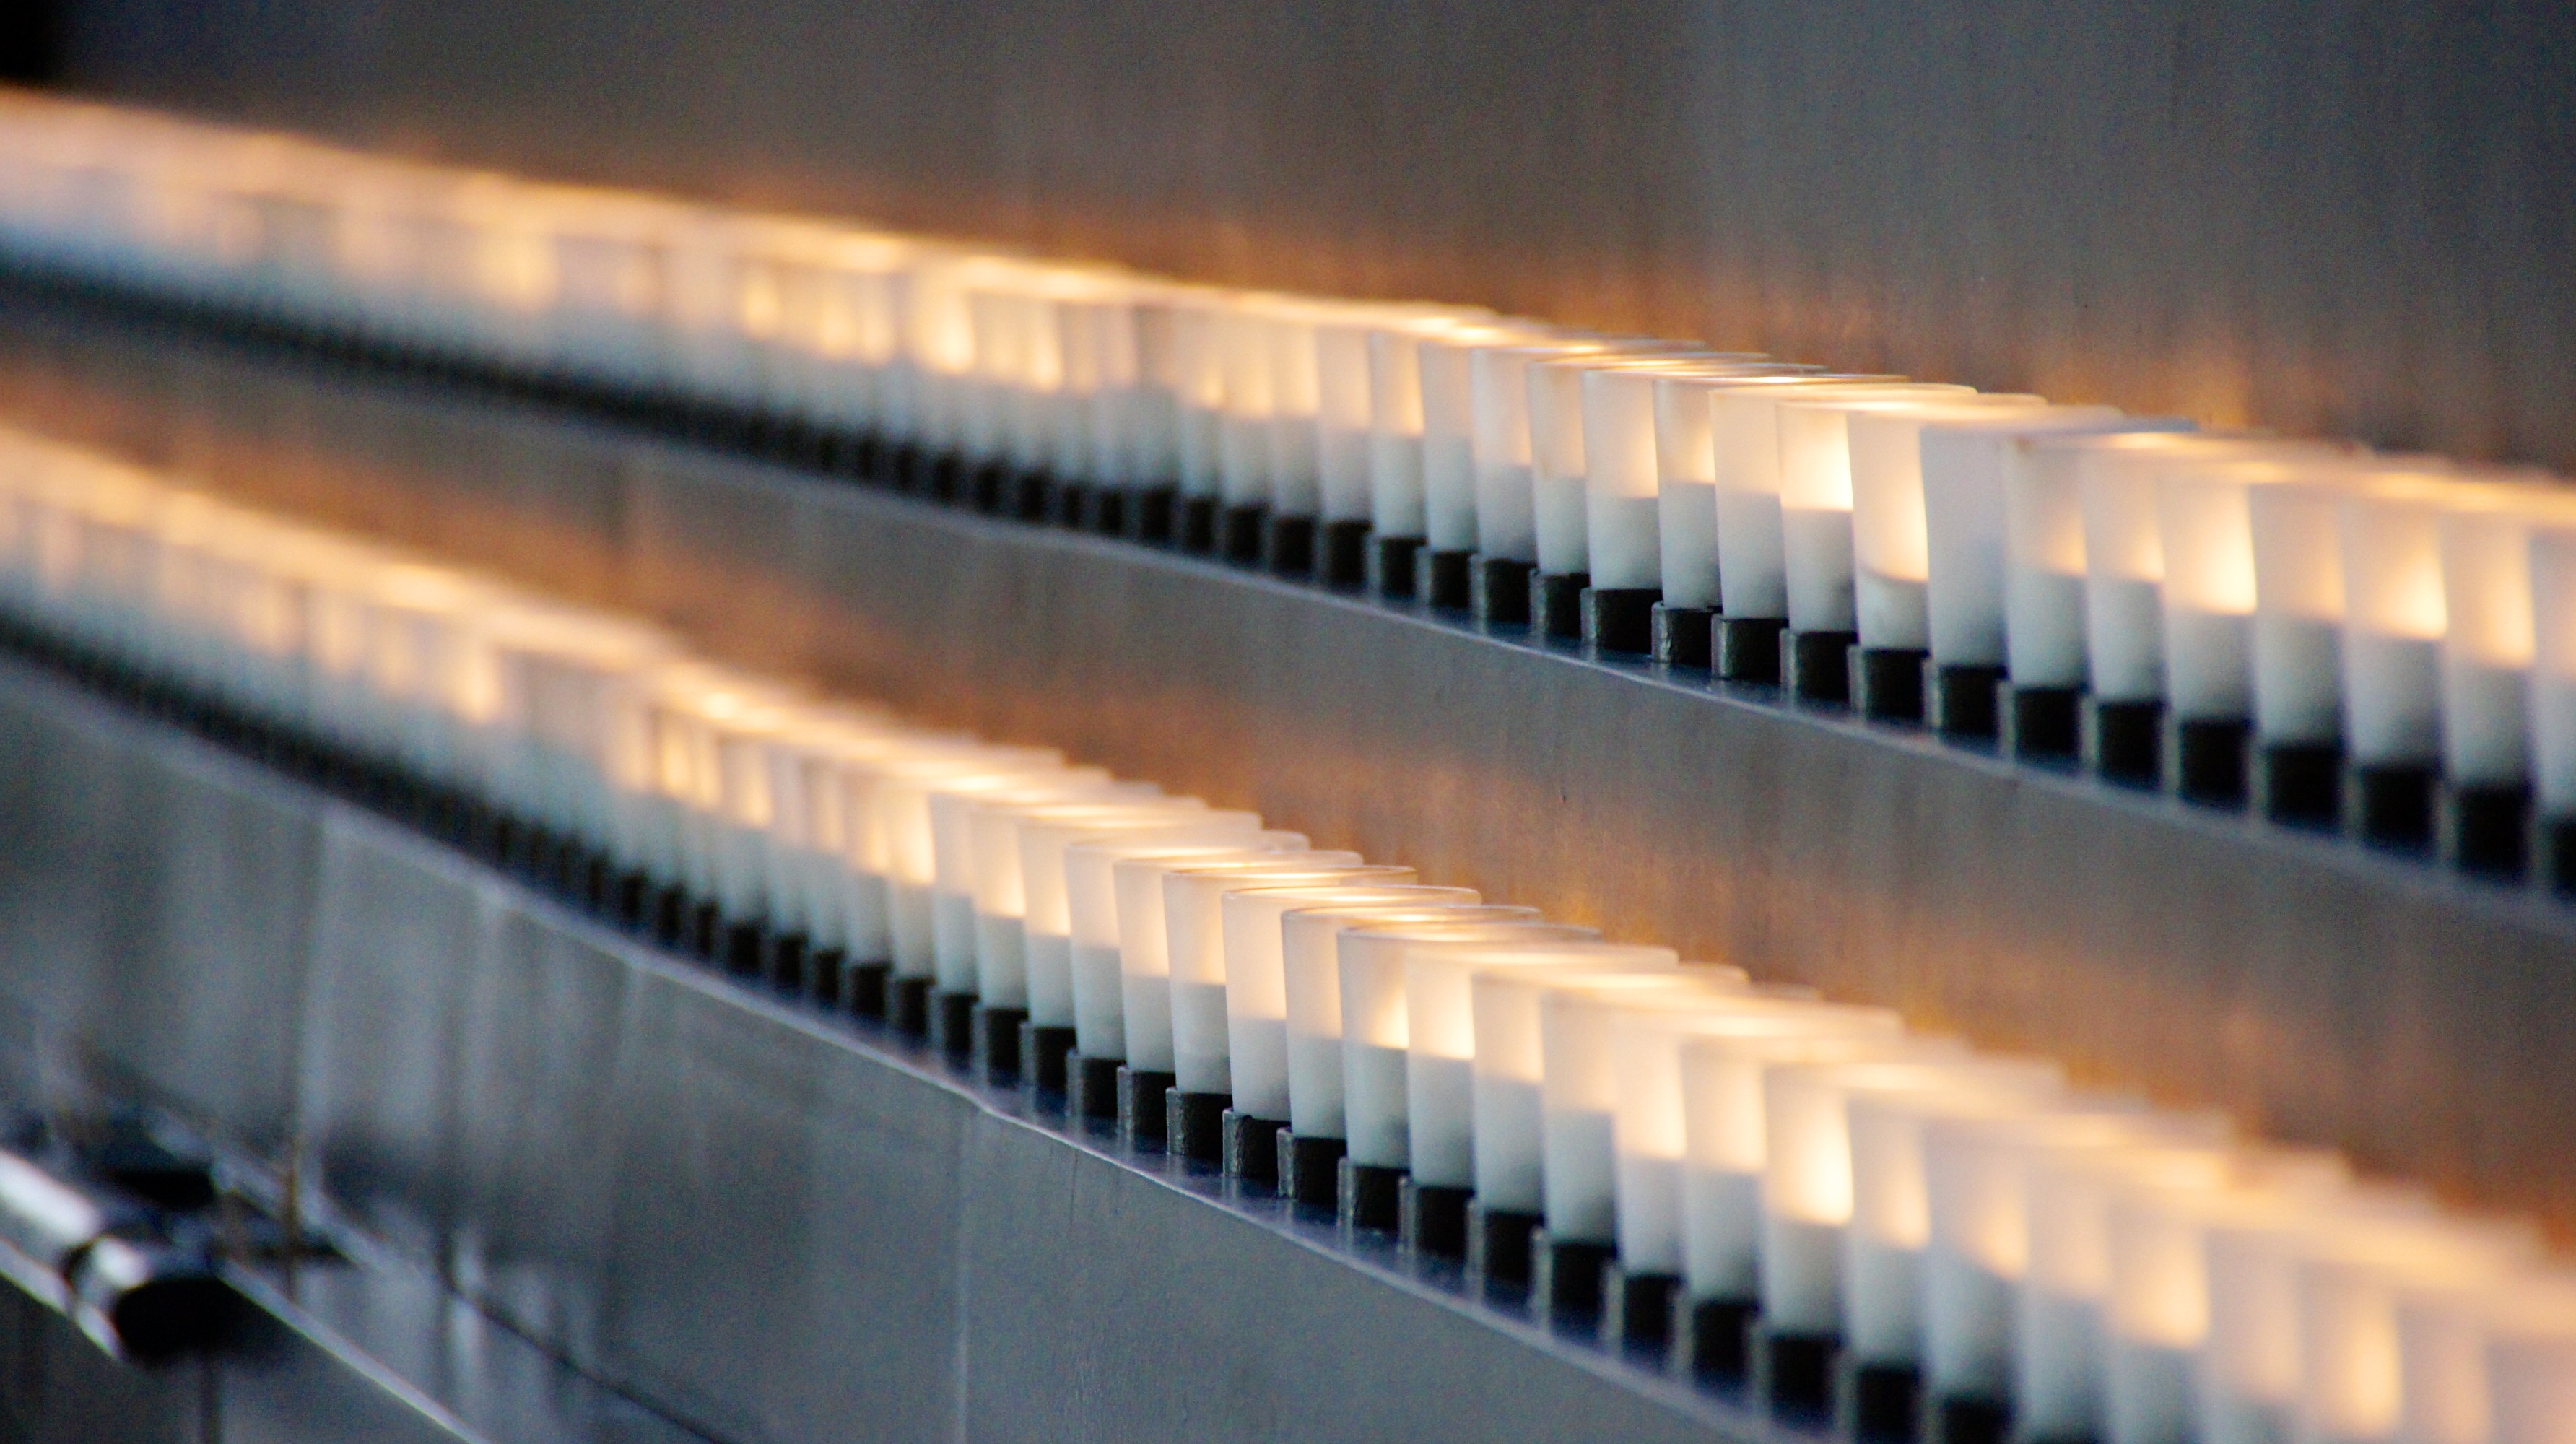 An arrangement of memorial candles